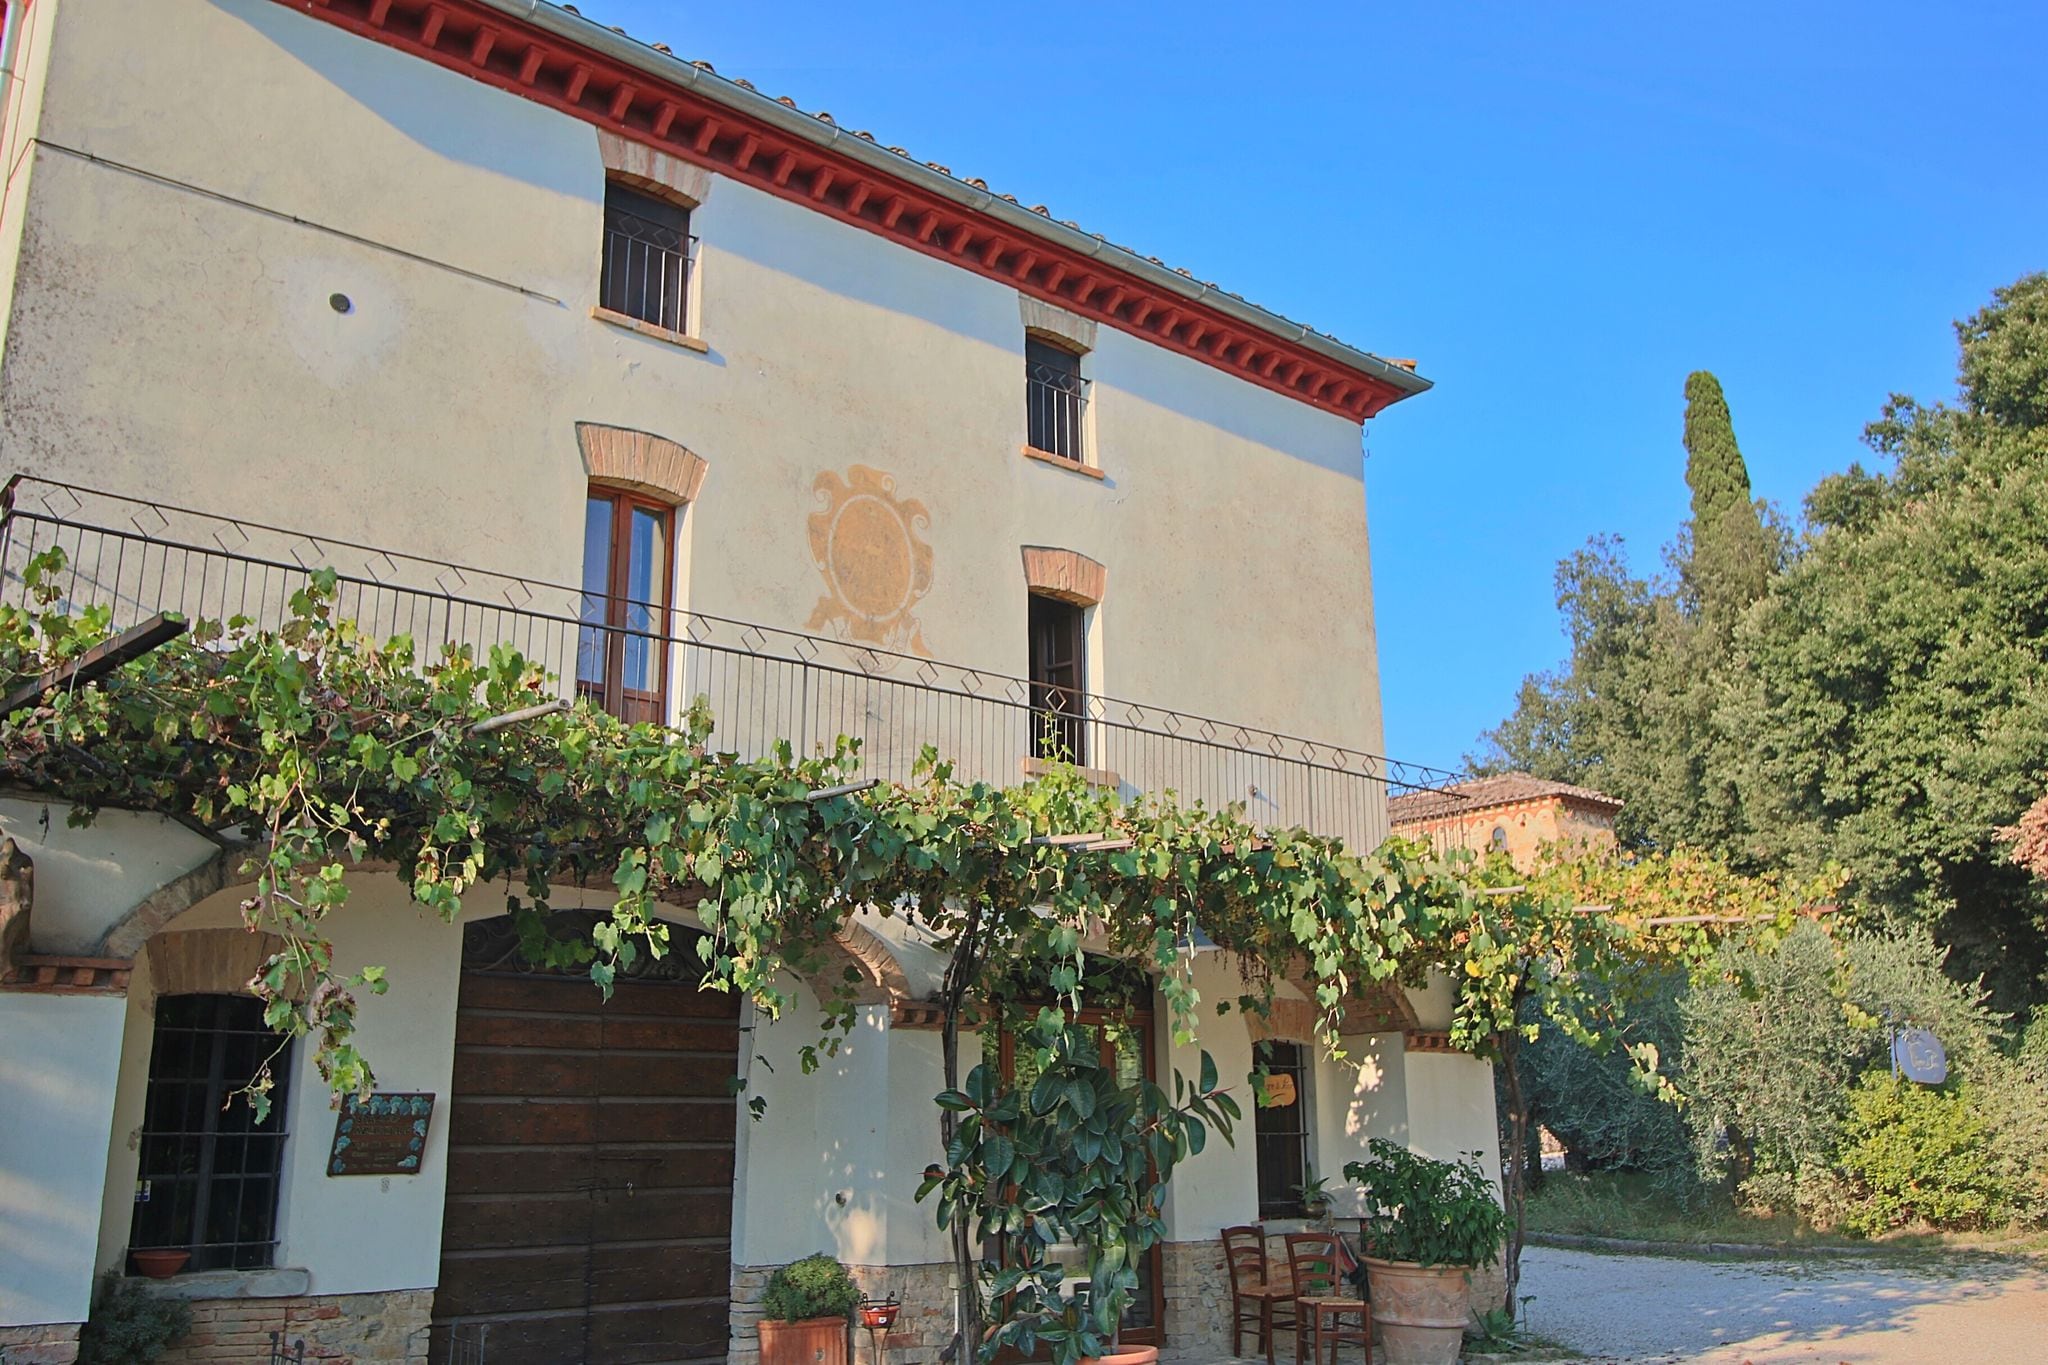 Sfeervol appartement in traditionele boerenwoning op landgoed vlakbij Perugia